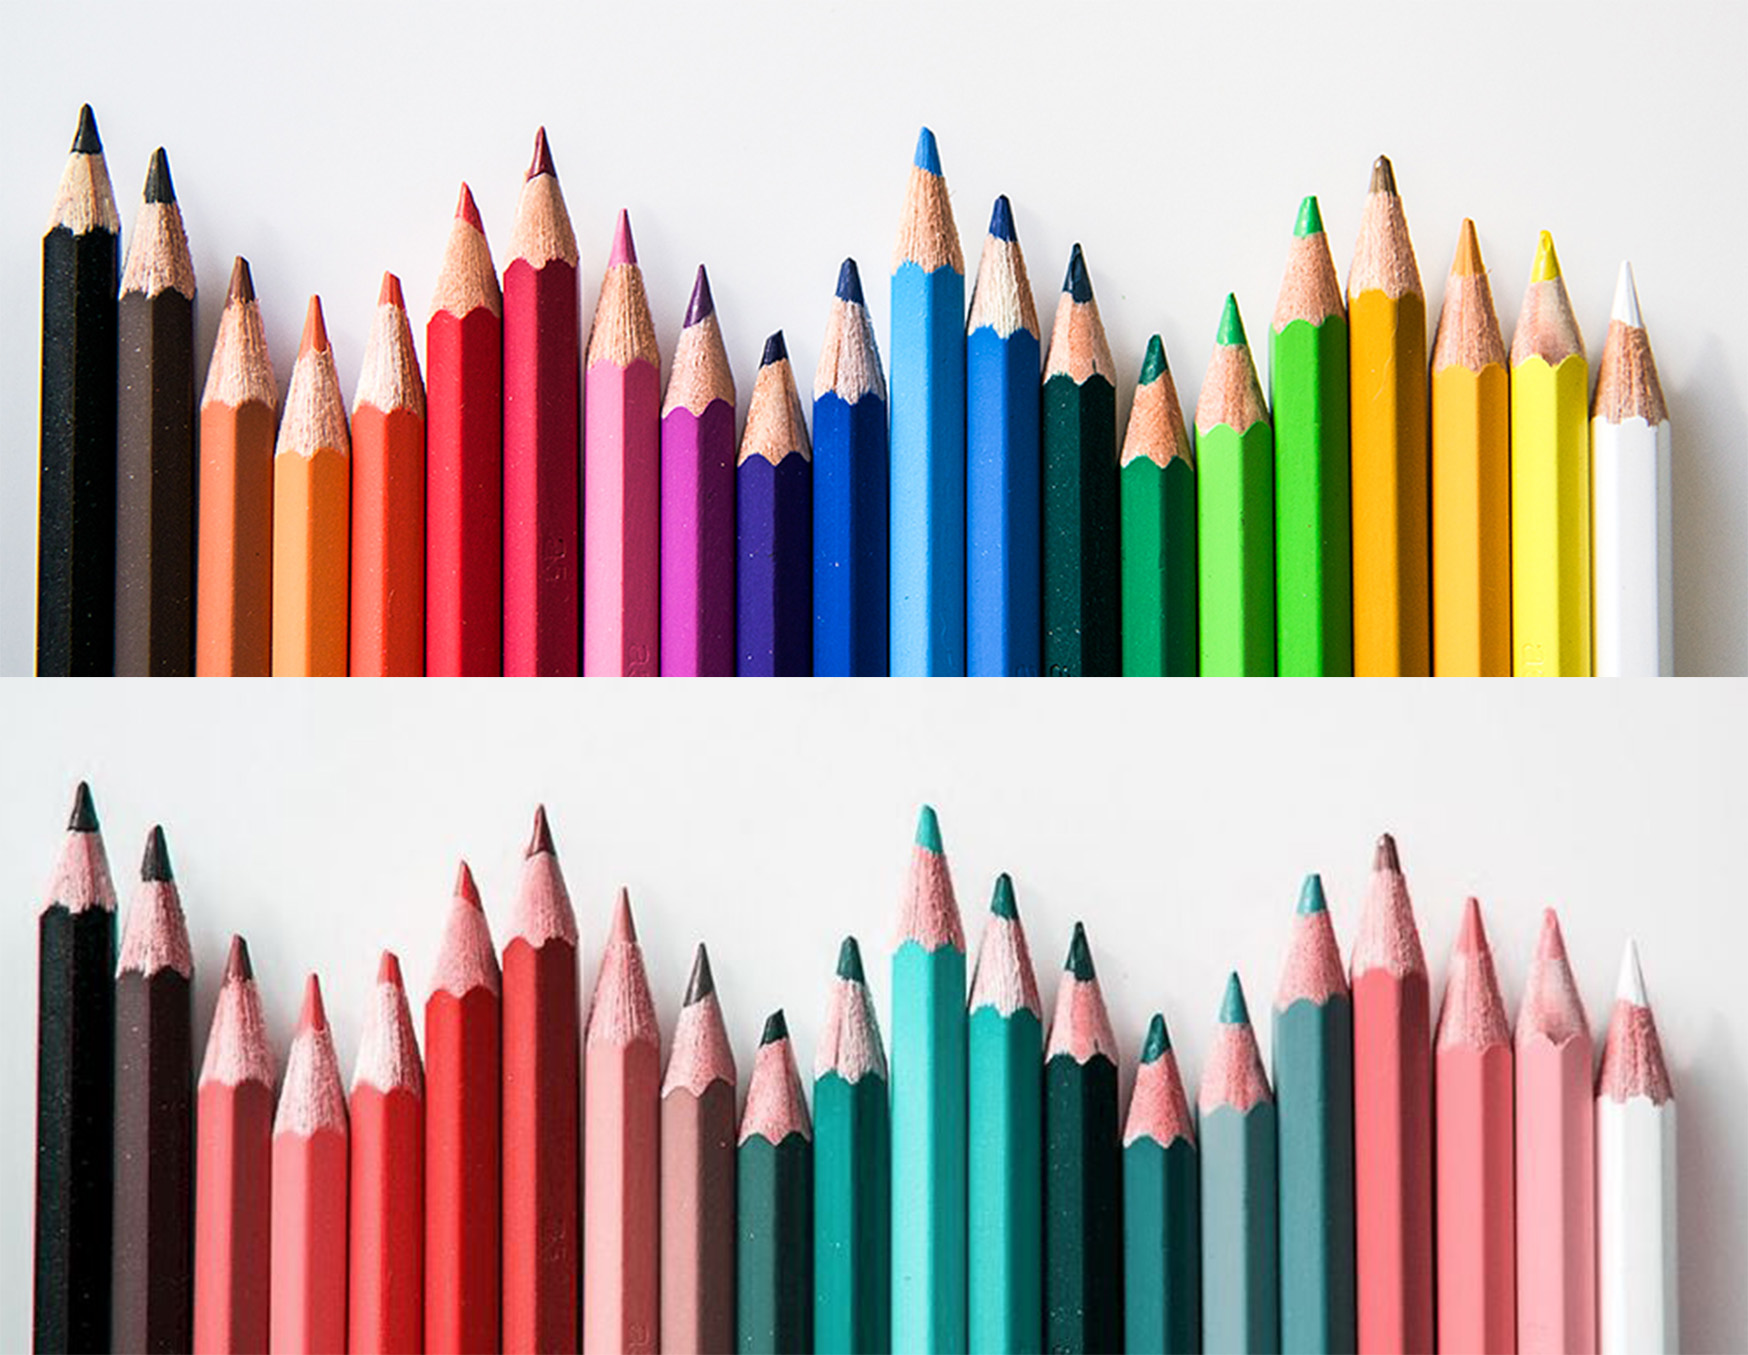 Pennor i två rader som visar färger i olika nyanser.